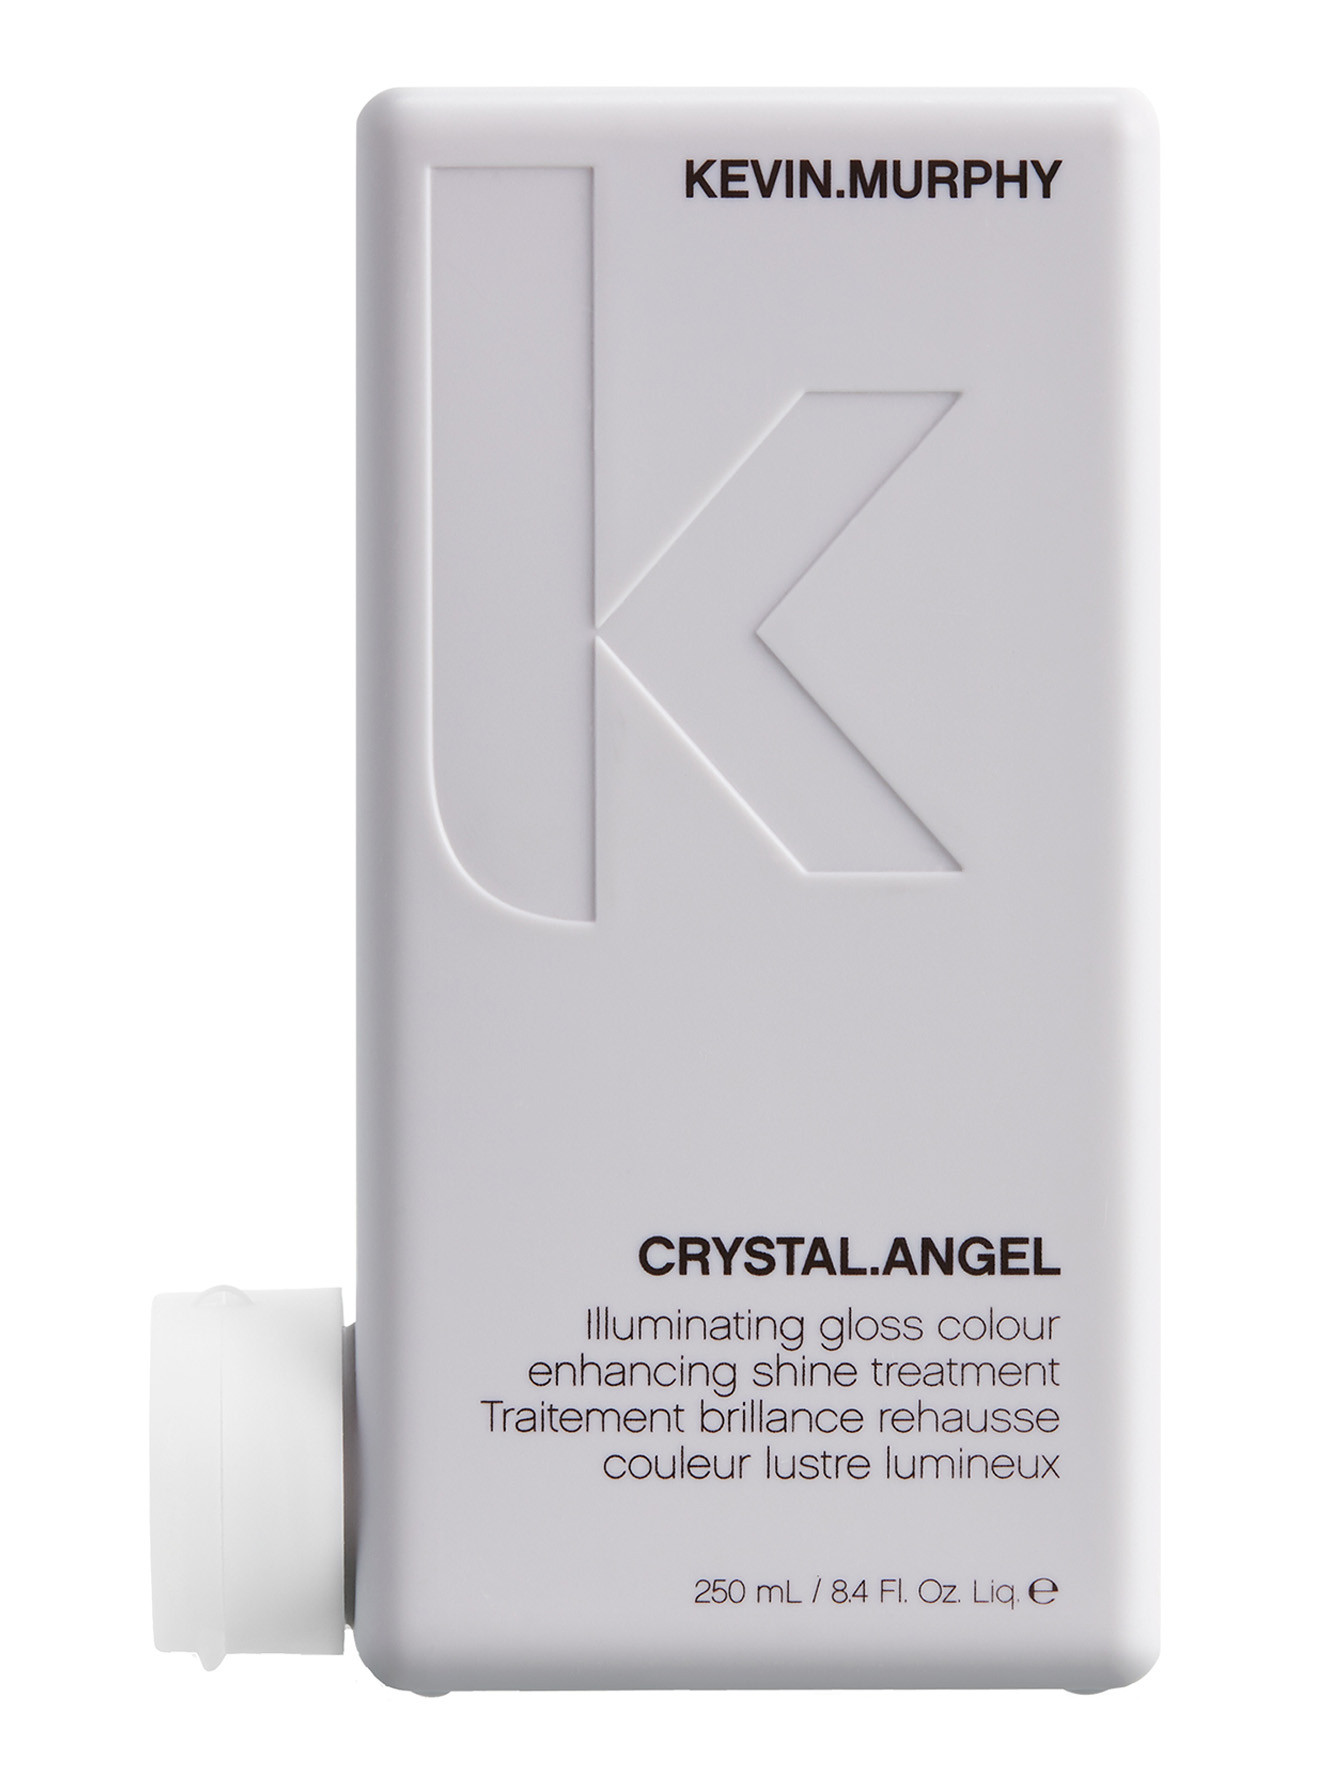 Тонирующий бальзам-уход для усиления оттенка светлых волос Crystal.Angel, 250 мл - Общий вид